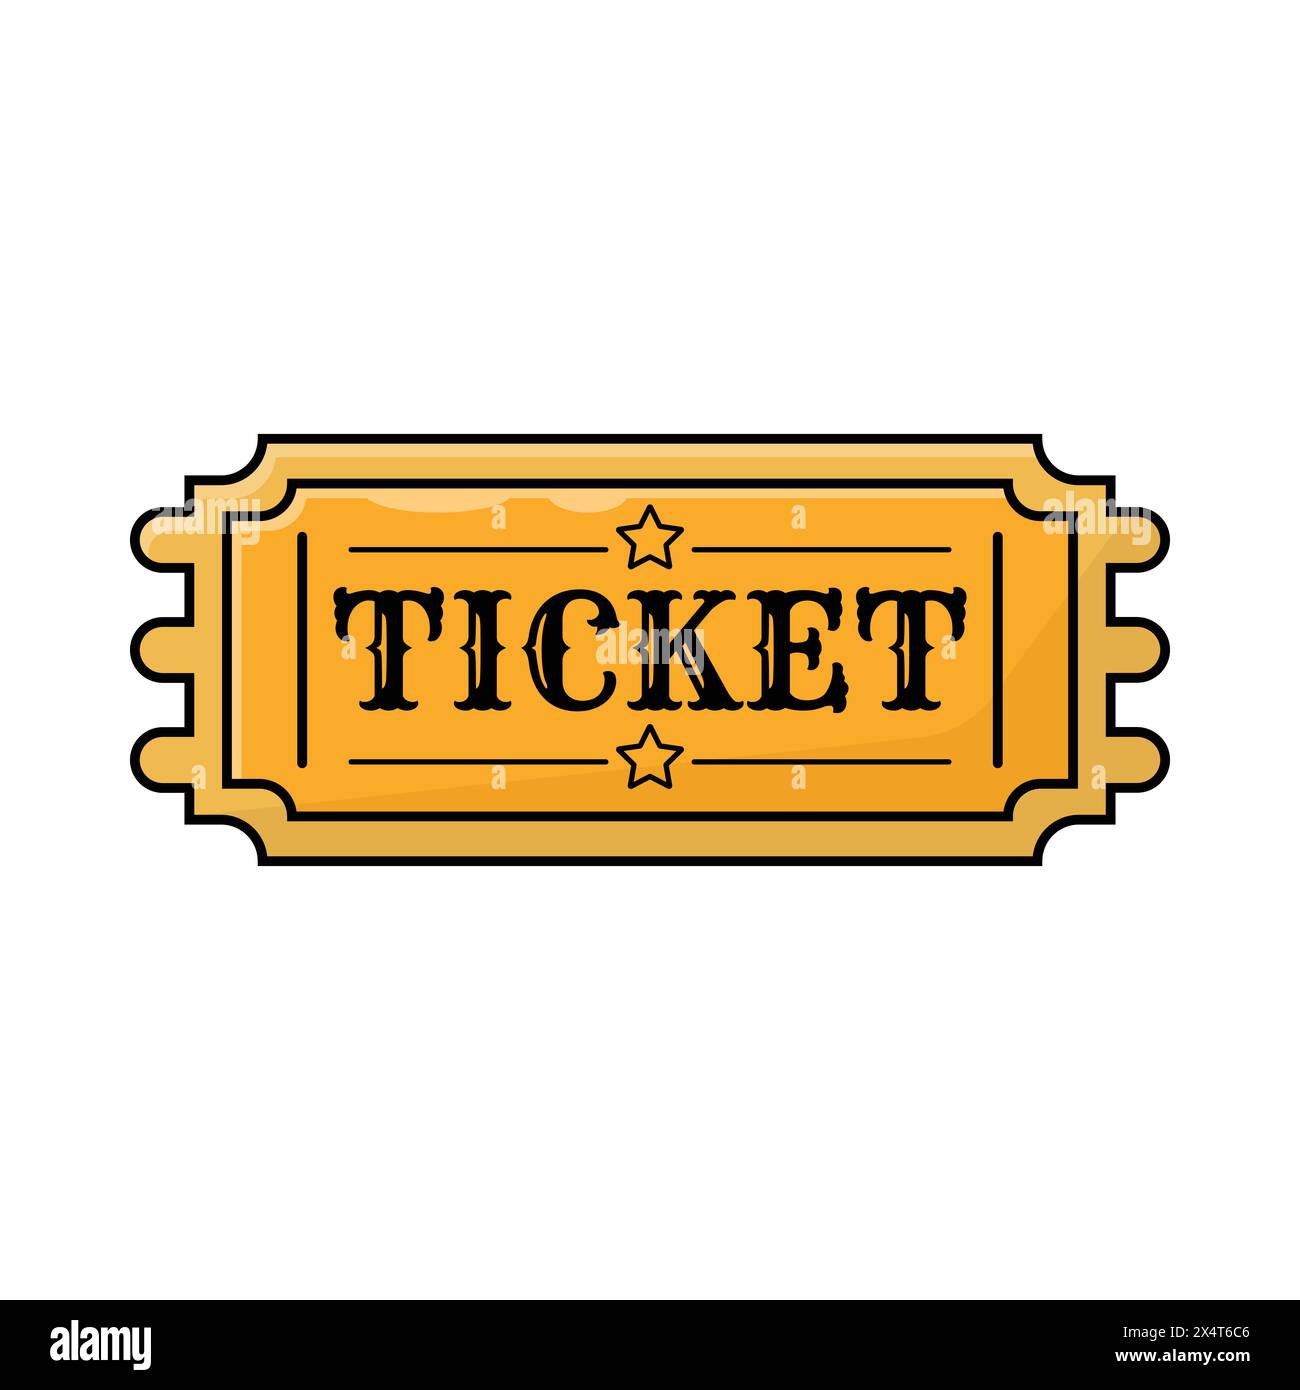 Ticketsymbol auf weißem Hintergrund. Farbenfrohes Design. Vektorillustration im Retro-Design Stock Vektor